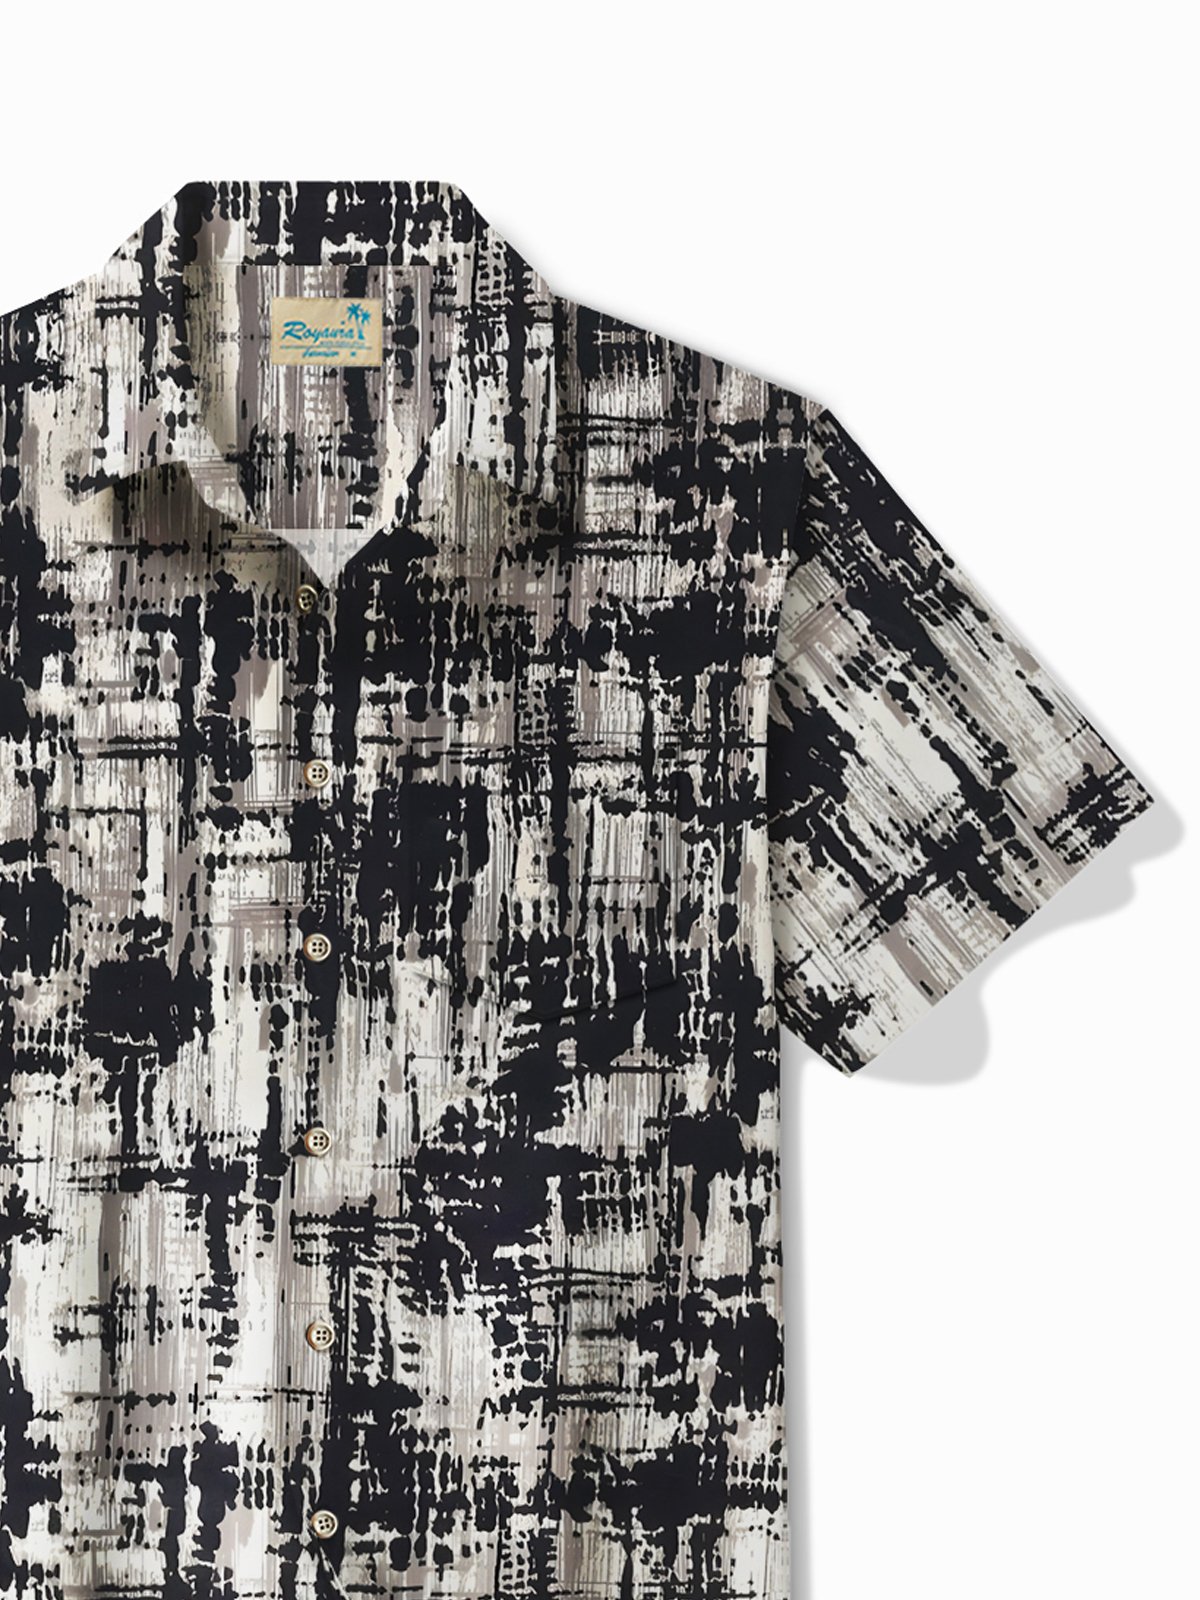 Royaura Vintage Art Textured Men's Shirt Stretch Pocket Camp Button Shirt Big Tall